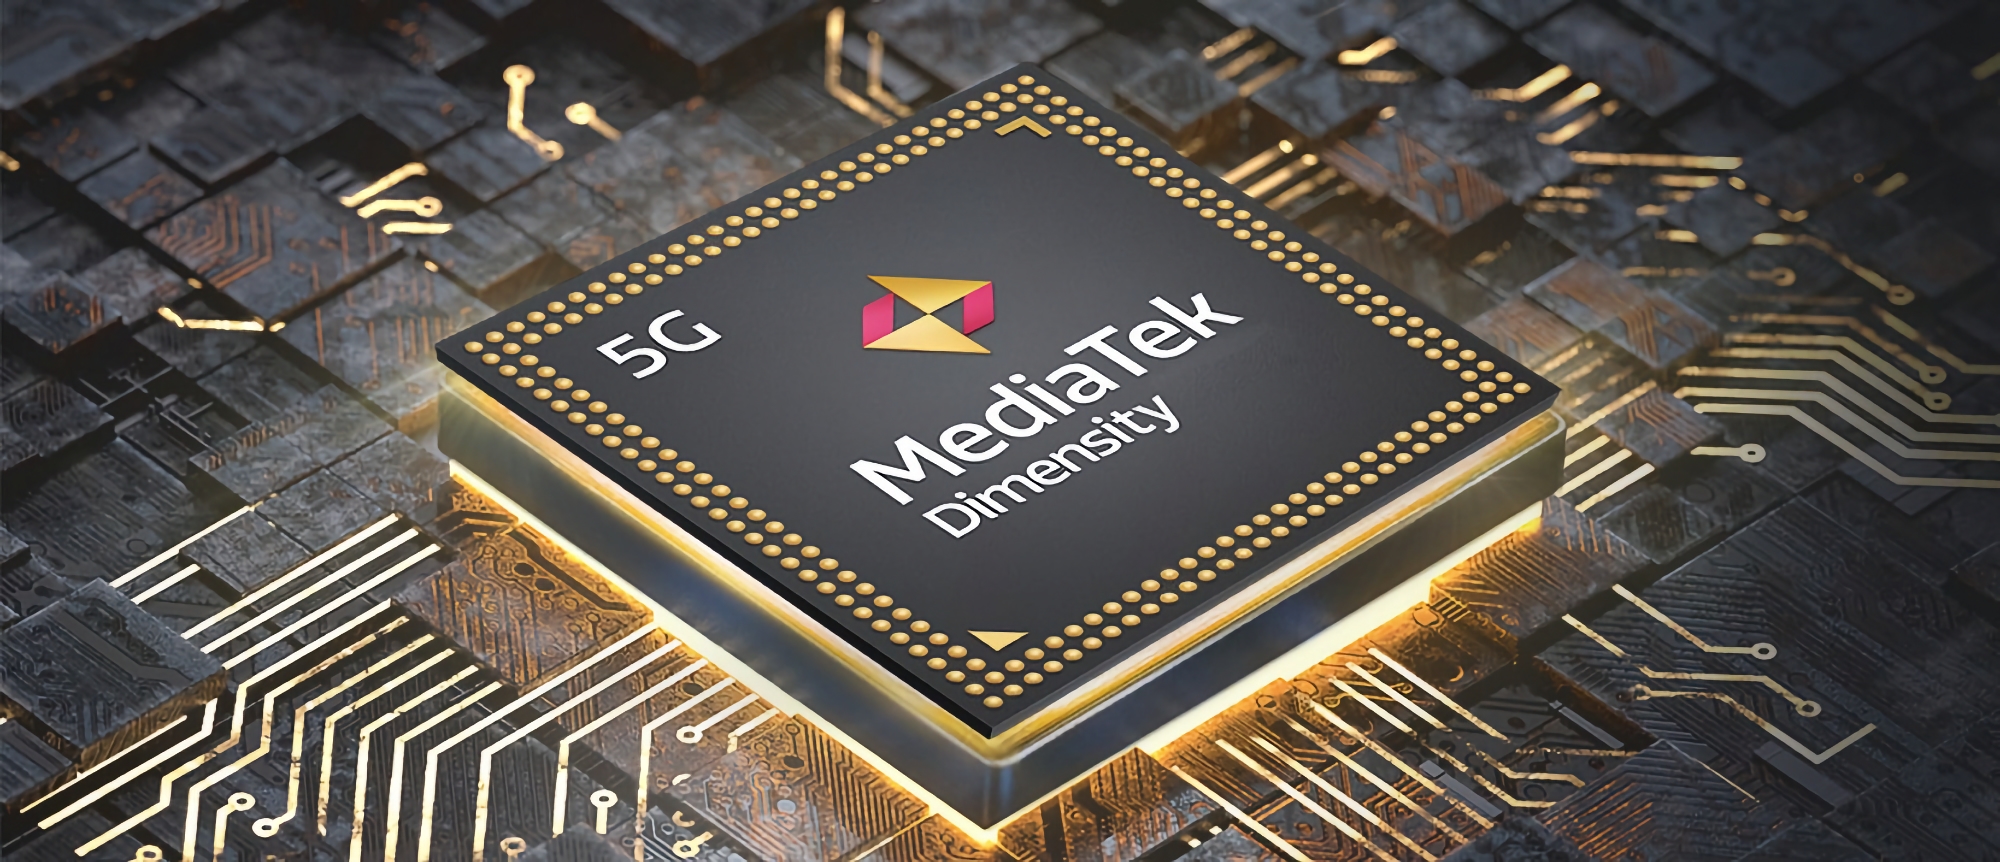 Snapdragon 8 Gen 2 i rywal Apple'a A16 Bionic: MediaTek zaprezentuje nowy flagowy procesor Dimensity 9200 podczas premiery 8 listopada